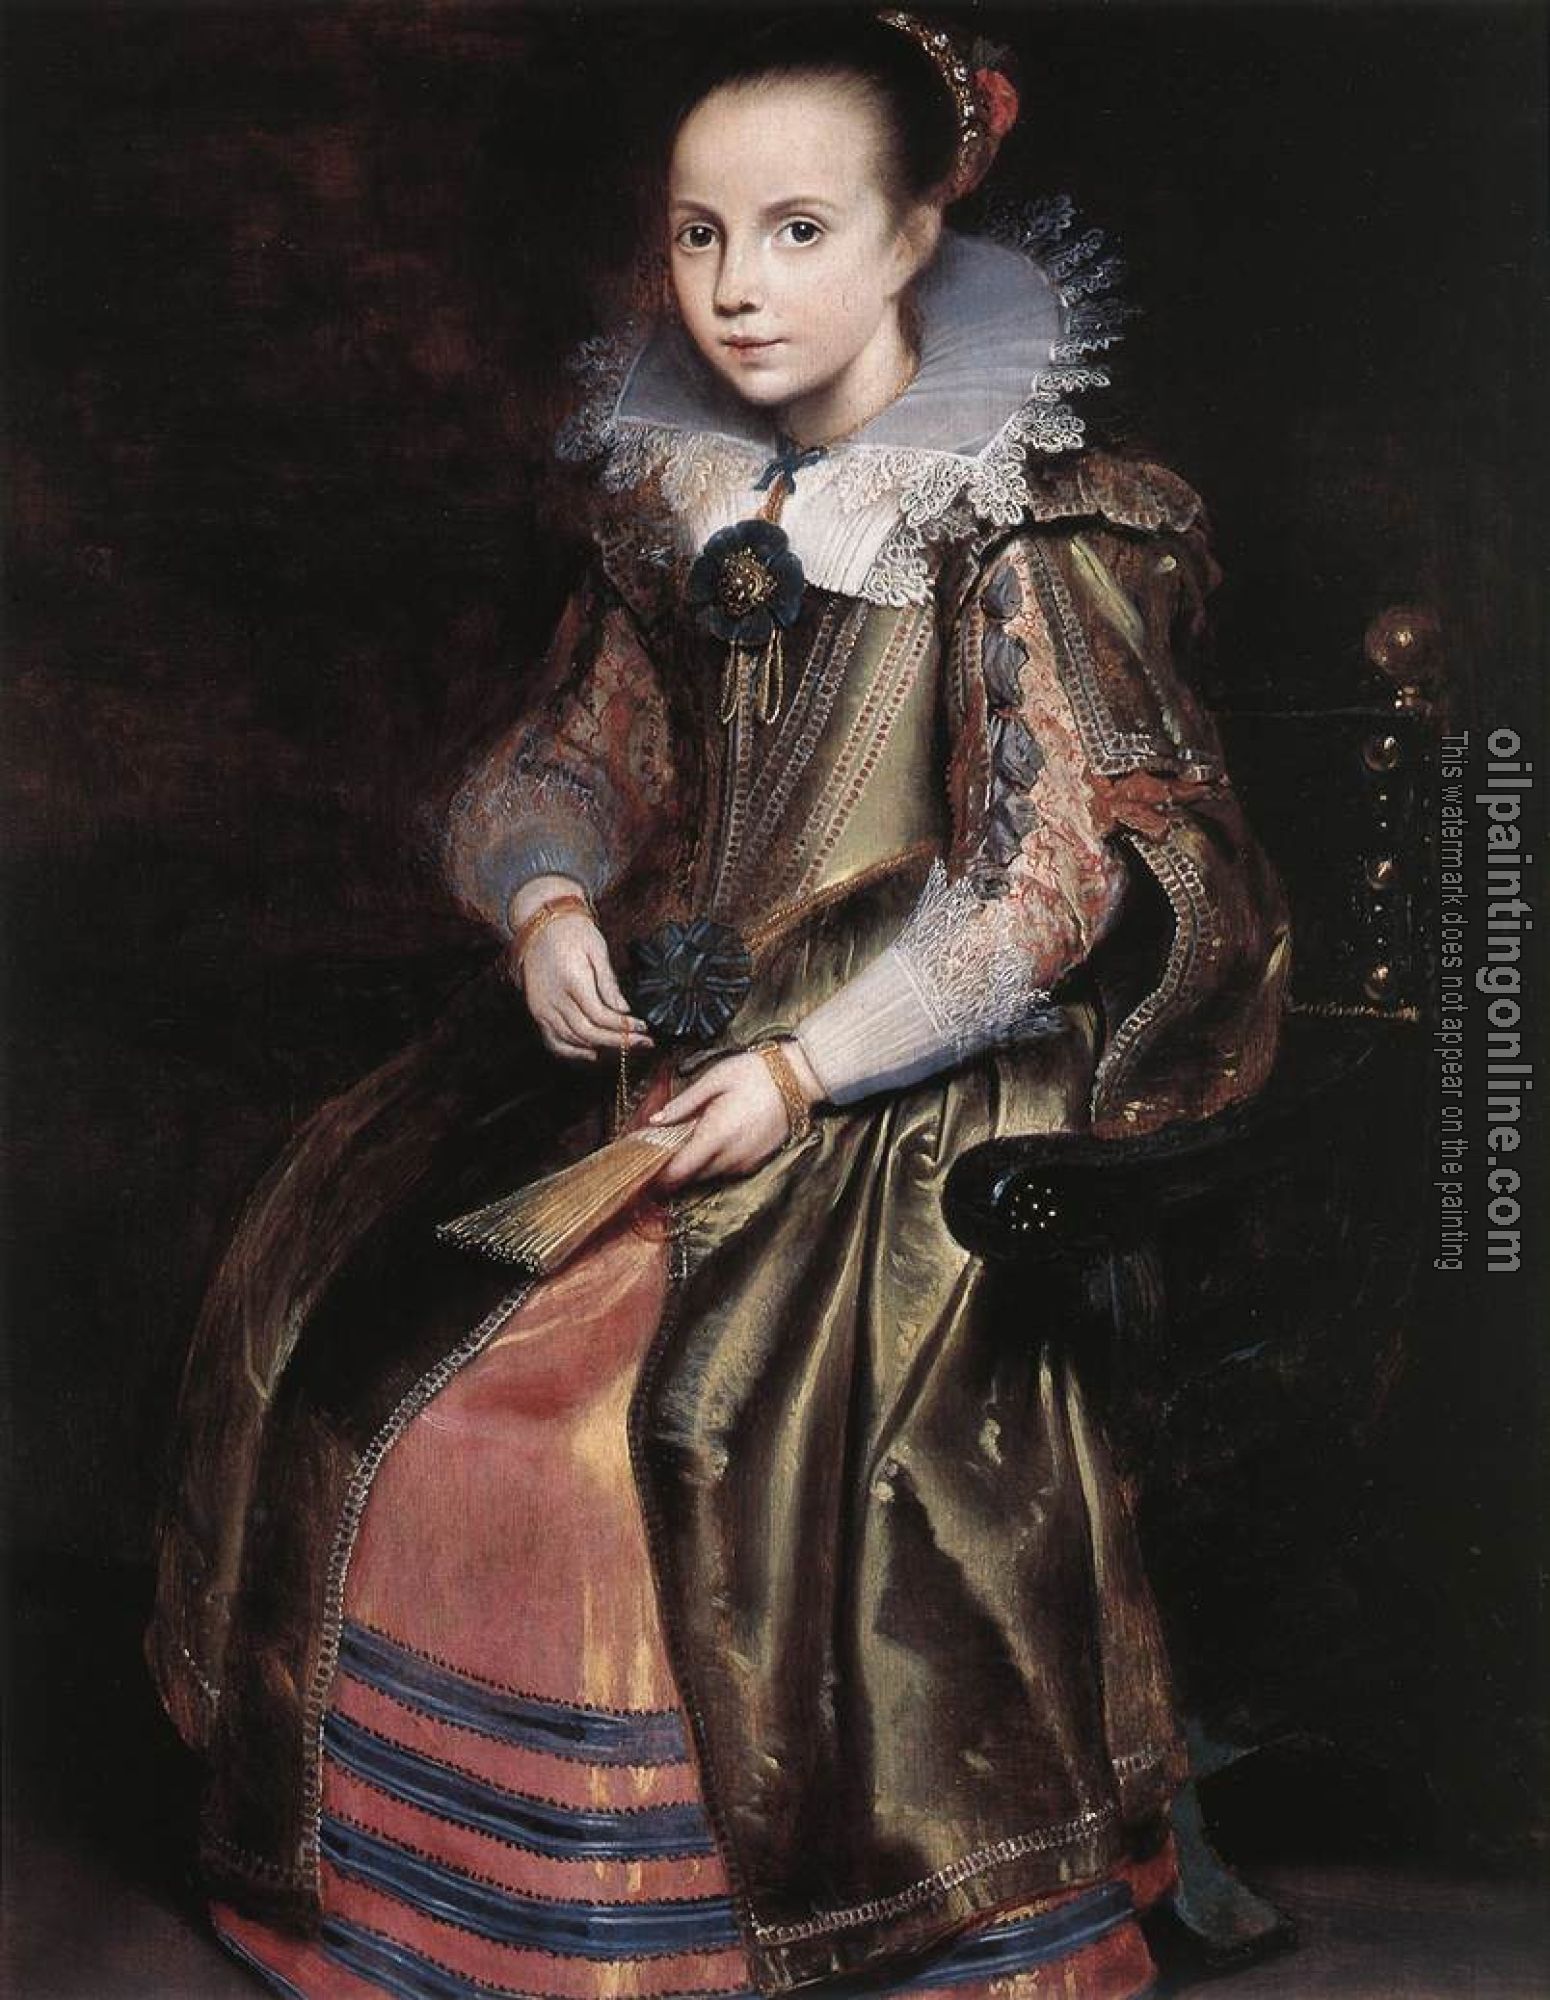 Vos, Cornelis de - Elisabeth Vekemans as a Young Girl